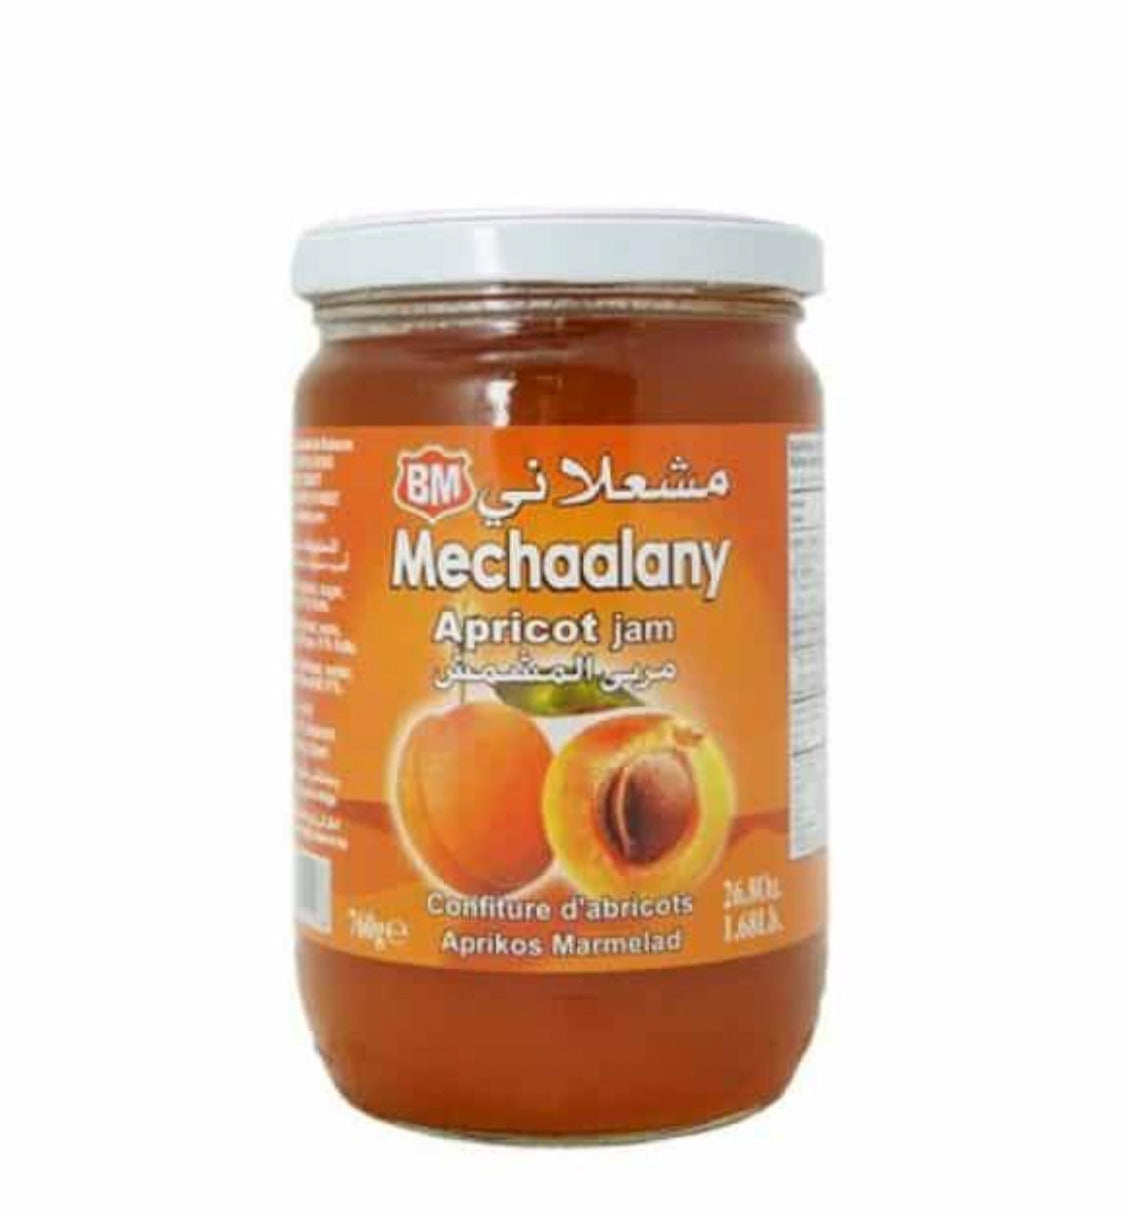 Mechaalany Apricot Jam